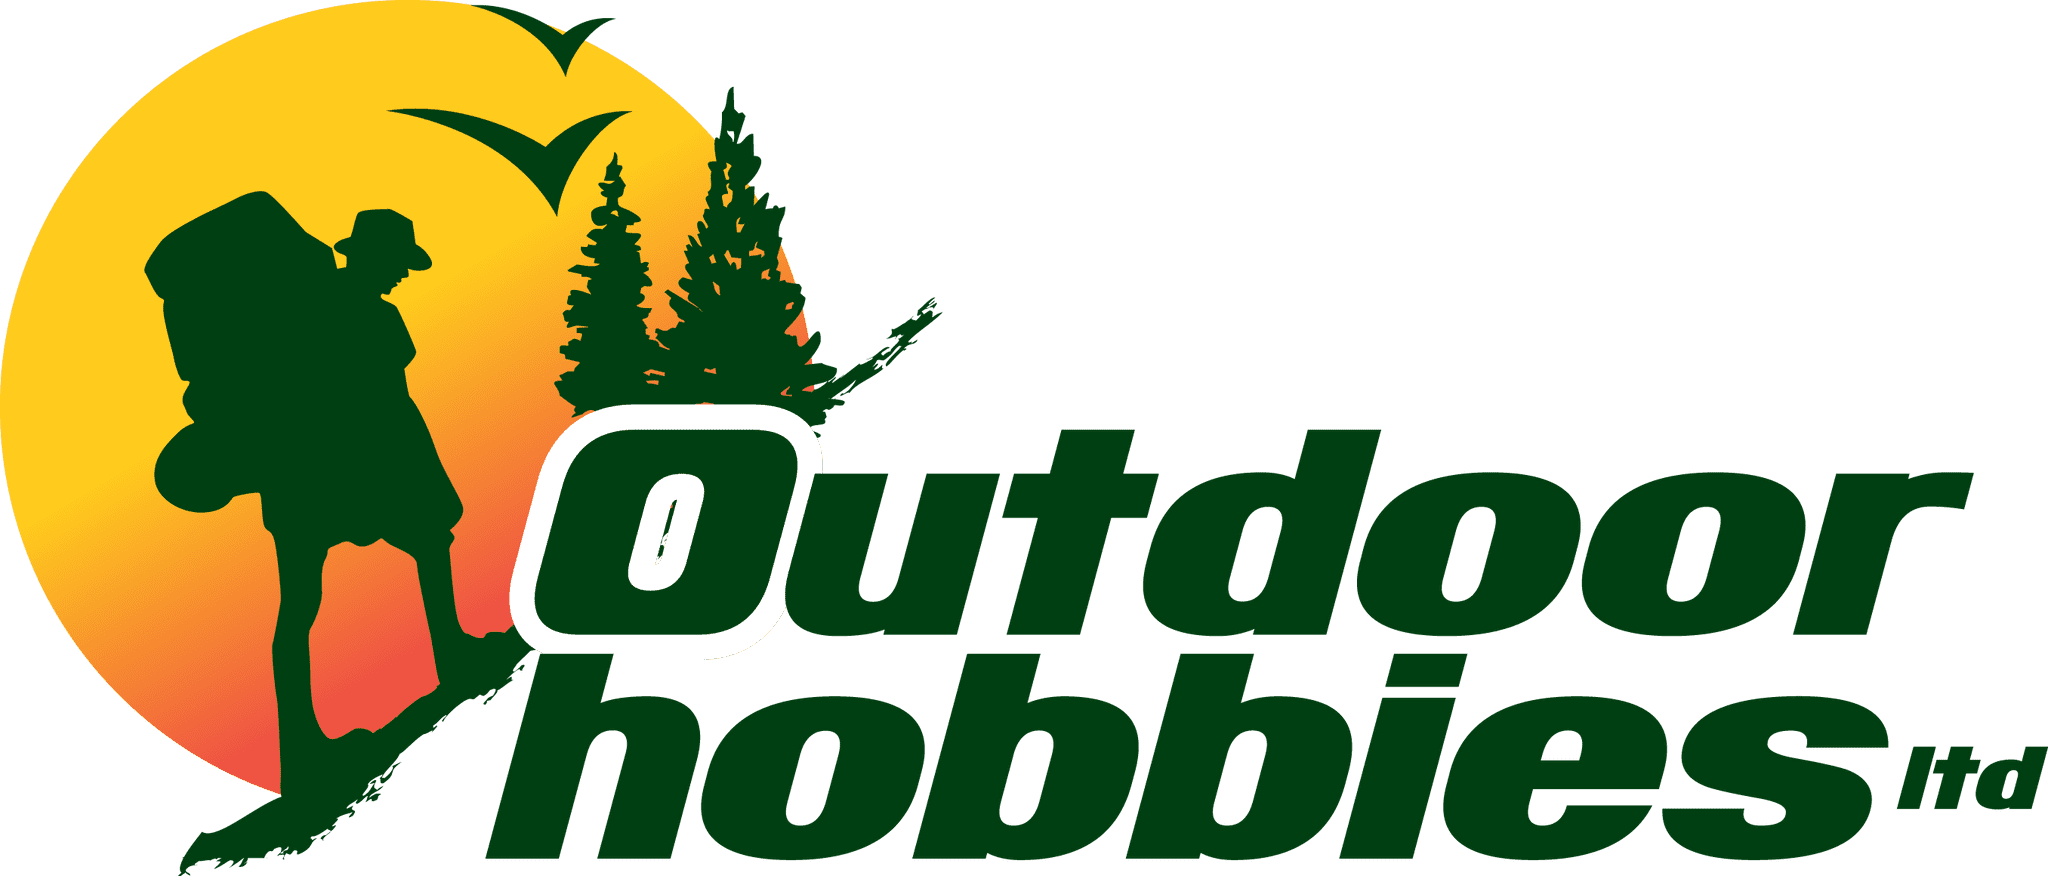 Outdoorhobbies